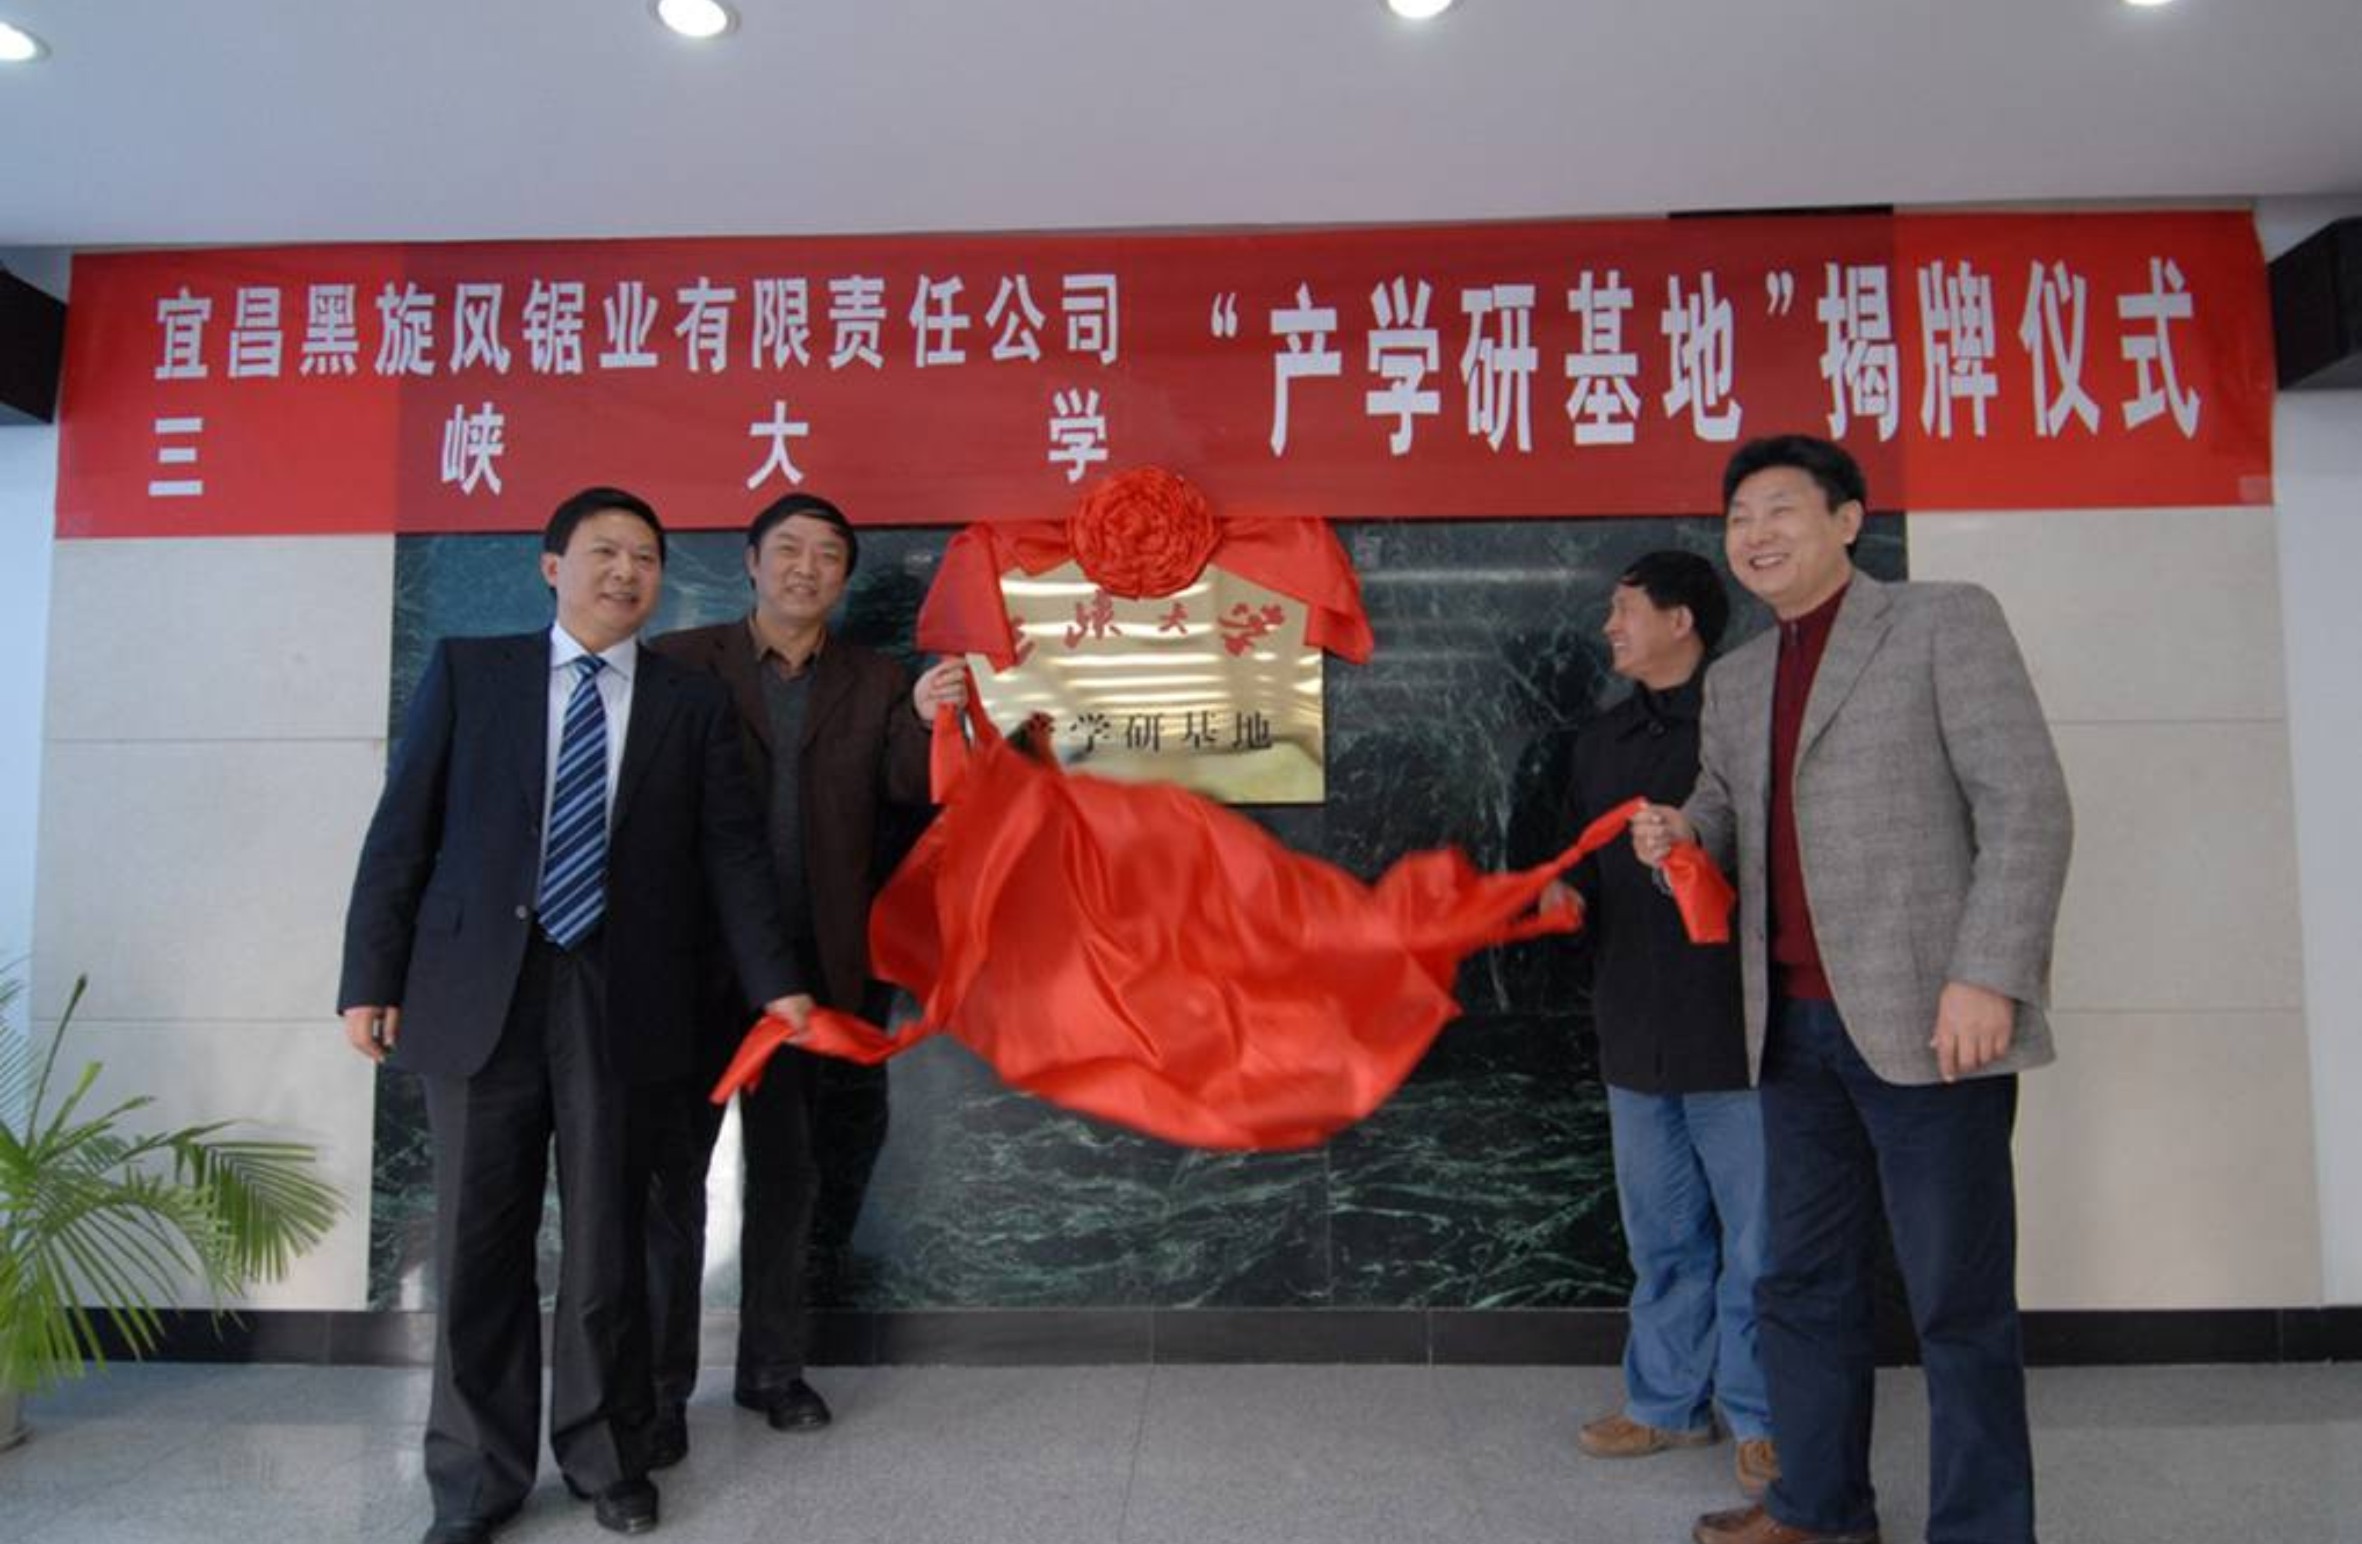 6.2008年11月24日三峡大学与黑旋风产学研基地揭牌